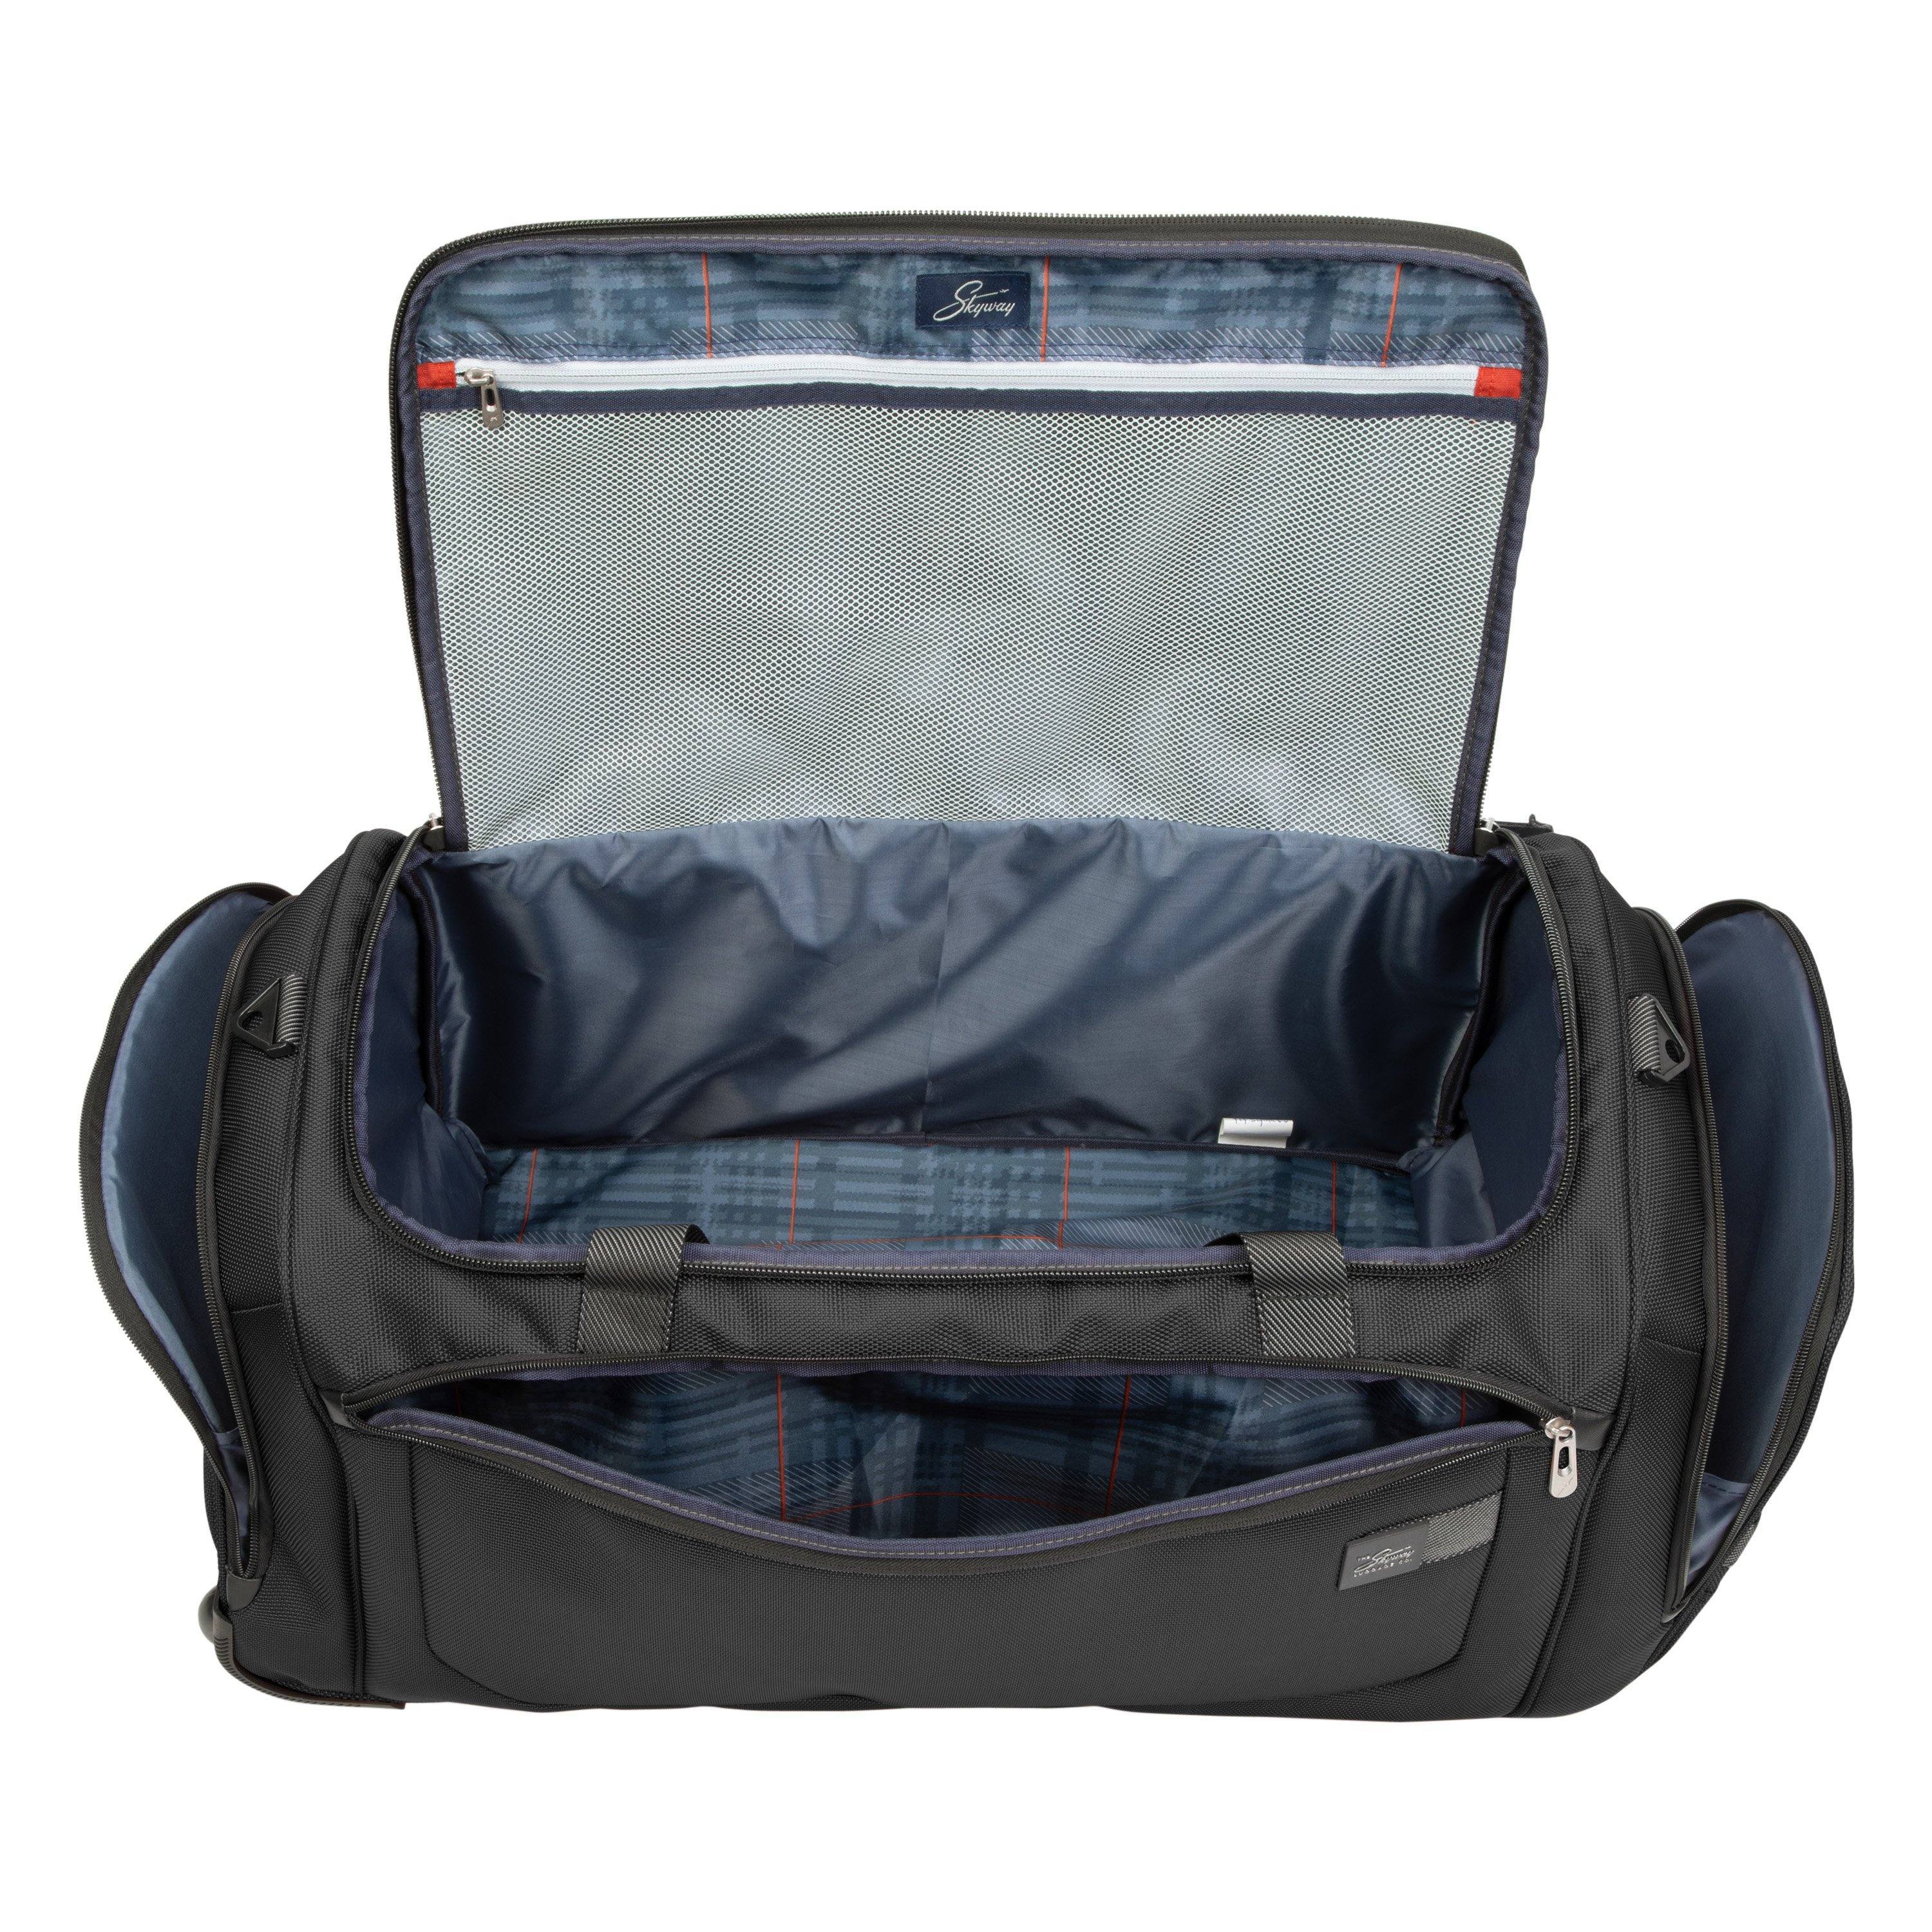 Skyway Luggage Sigma 2 Rolling Garment Bag